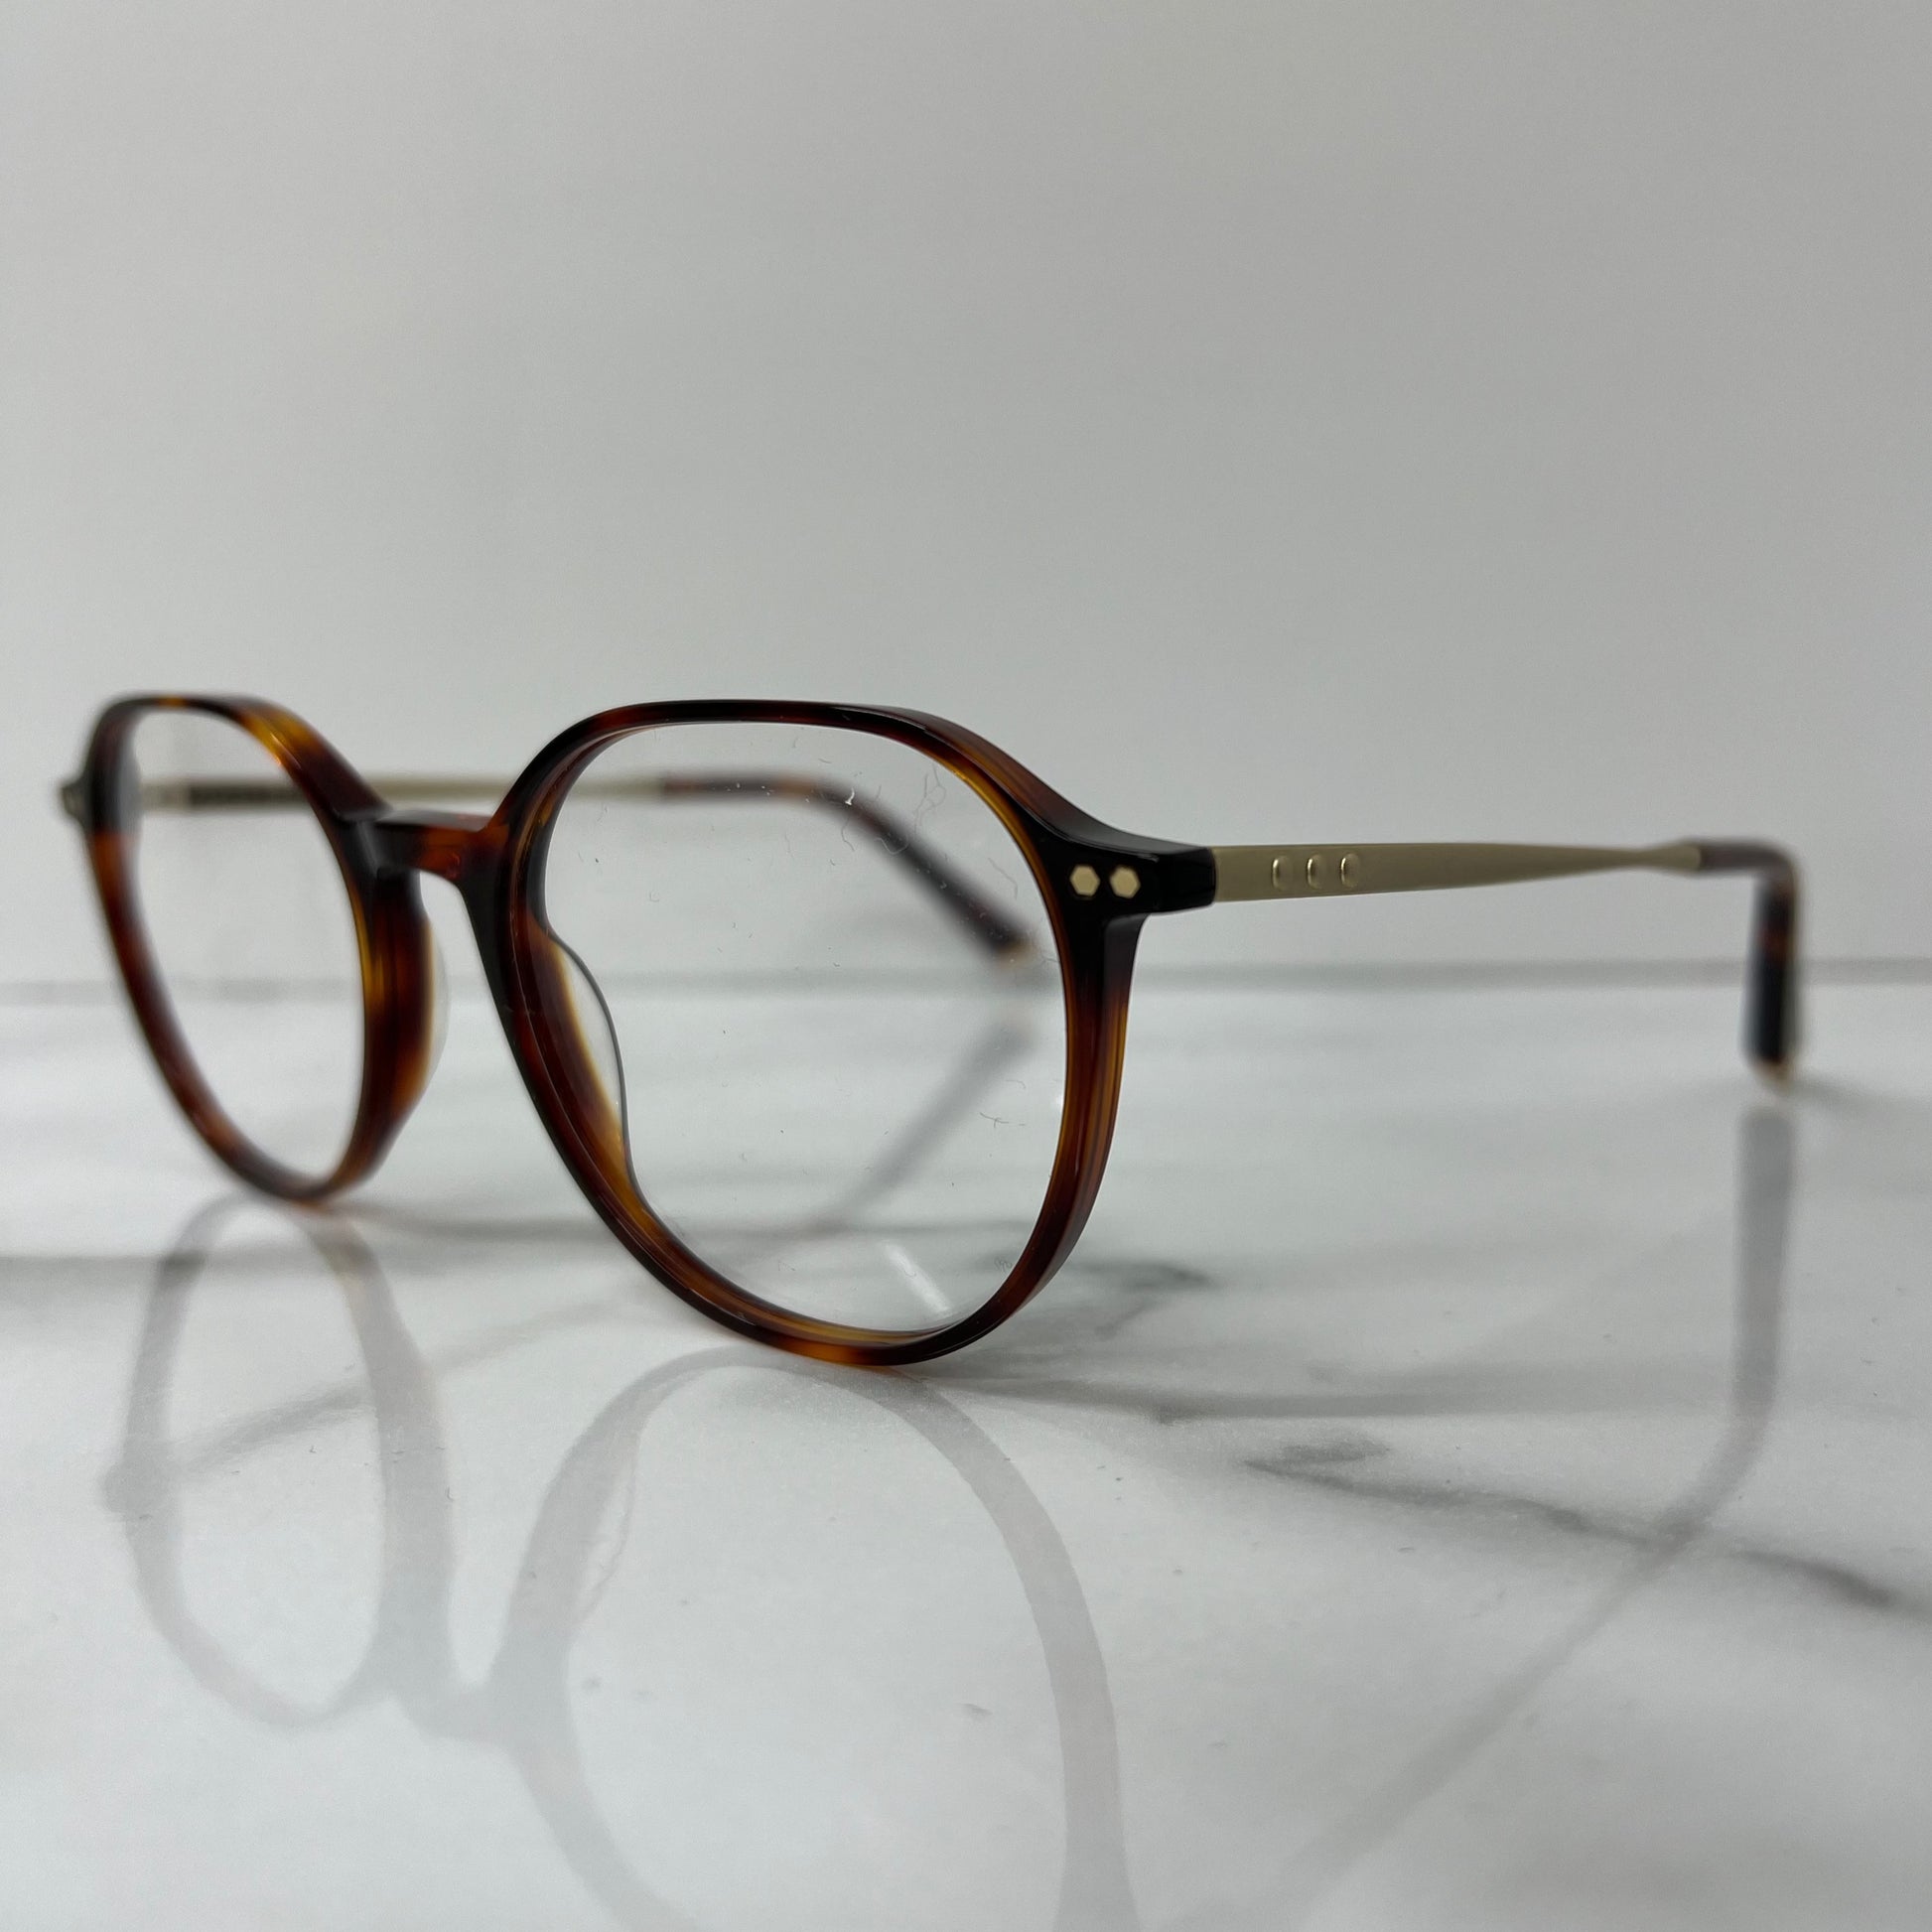 Taylor Morris SW2 C2 Prescription Optical Glasses